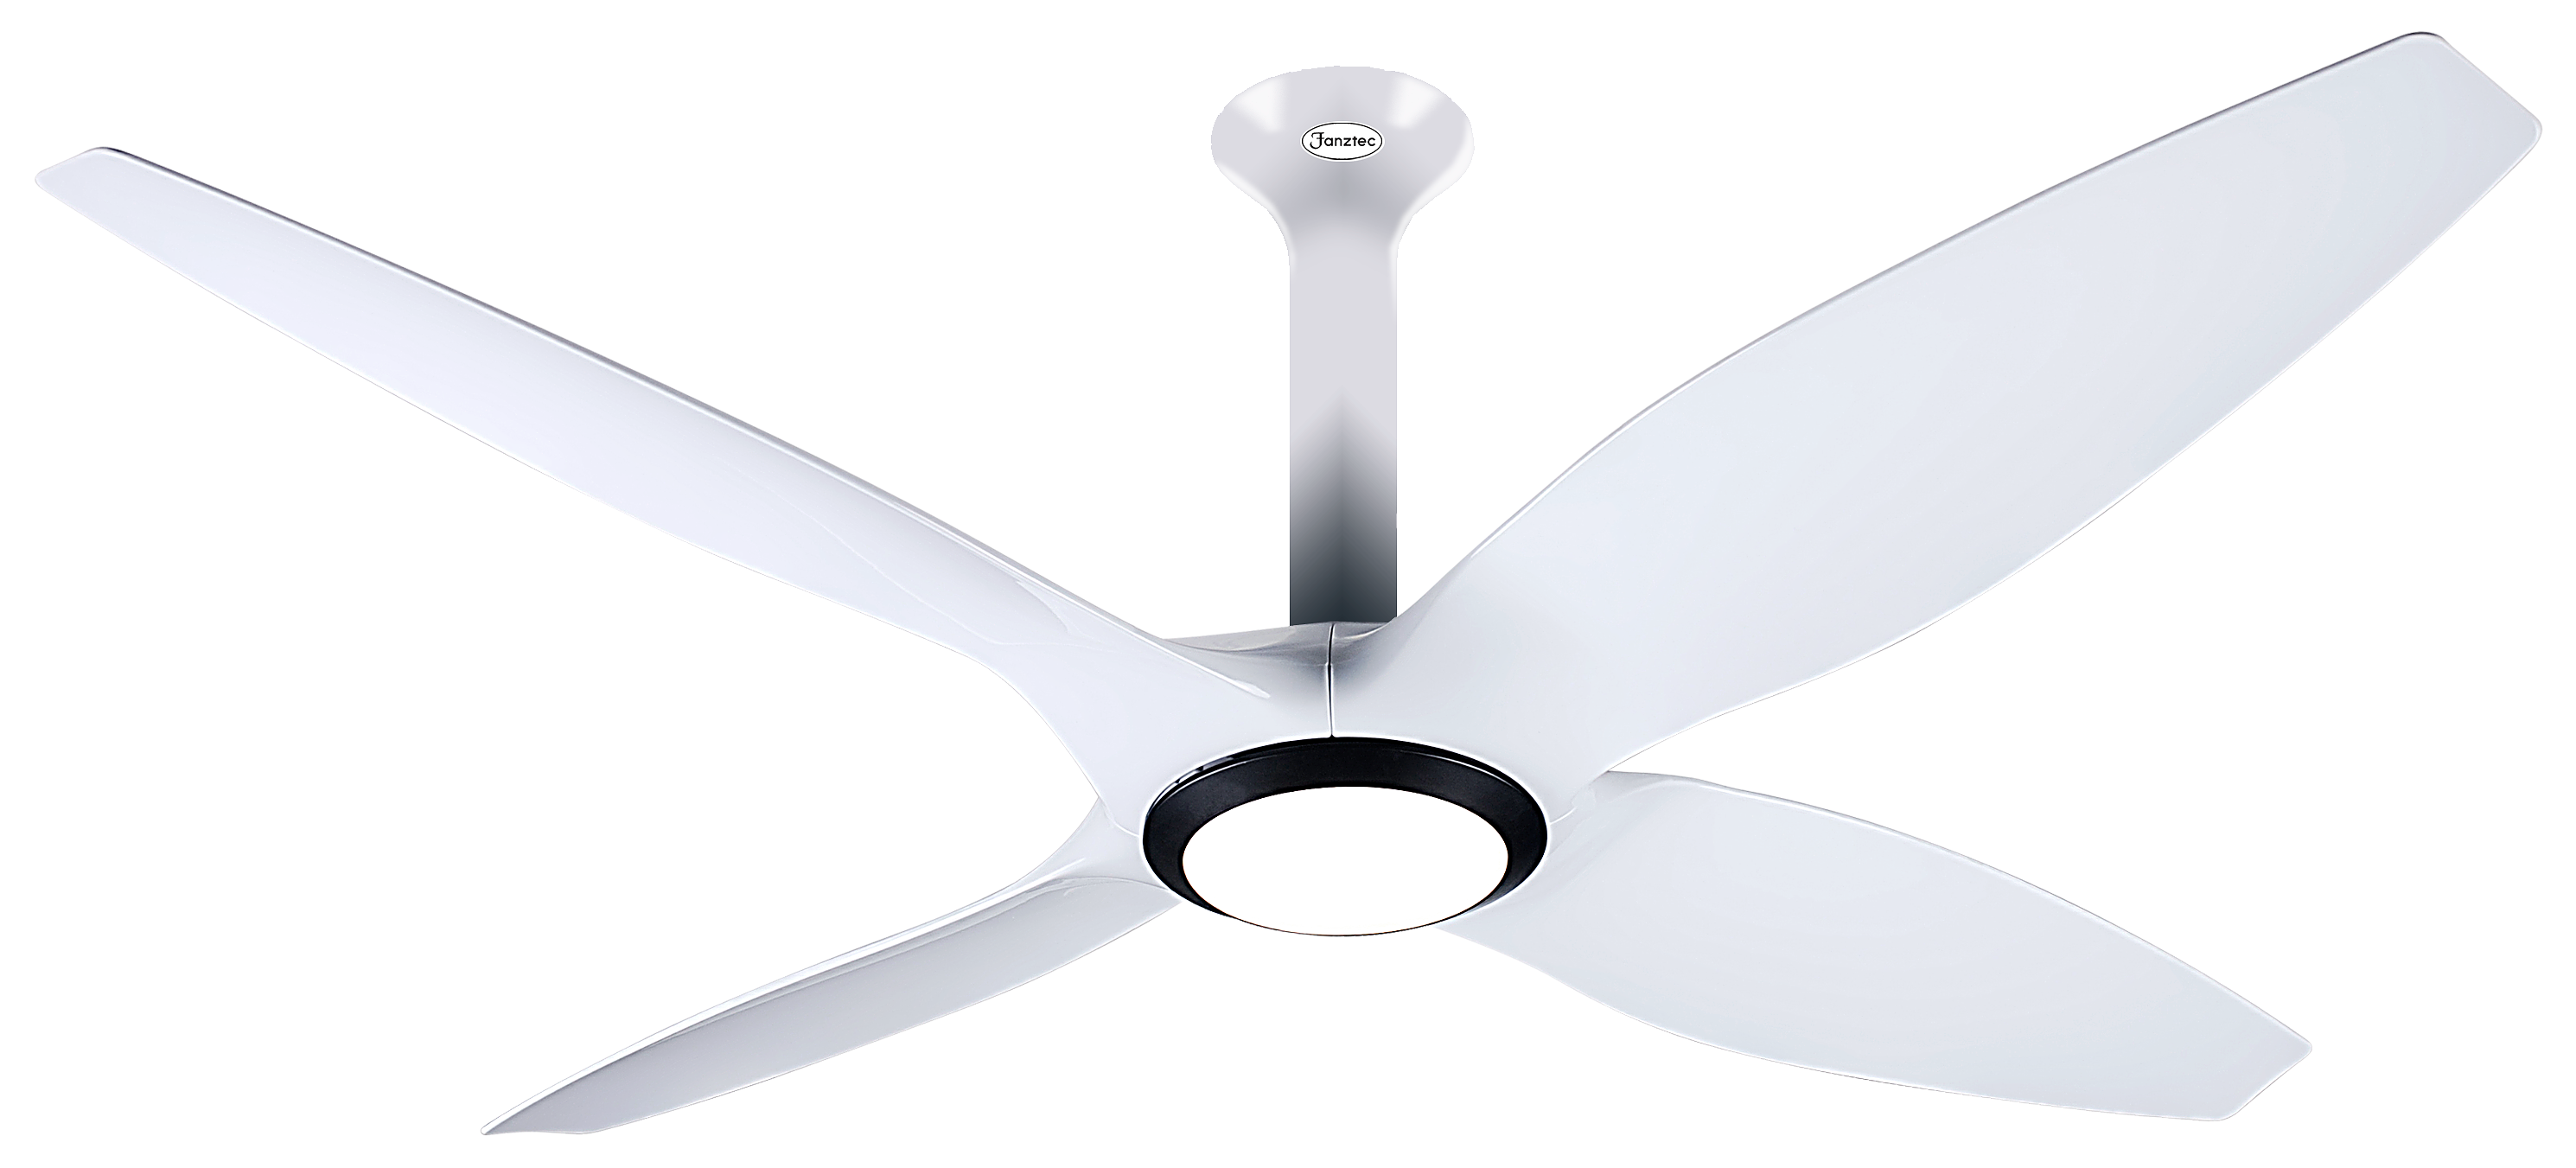 fan clipart ceiling fan